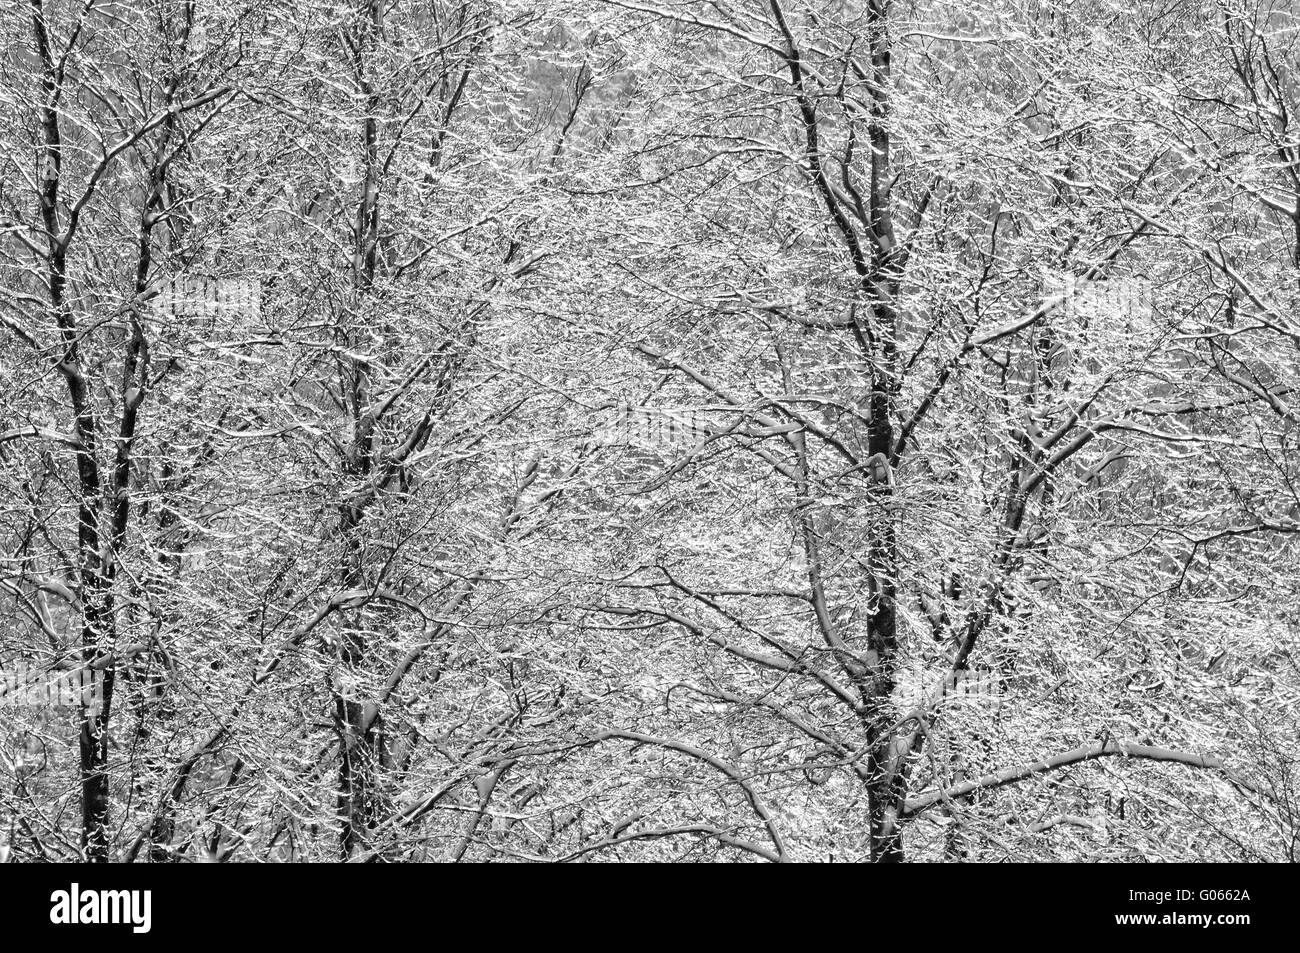 La nieve y el hielo en el bosque de hayas en blanco y negro Foto de stock